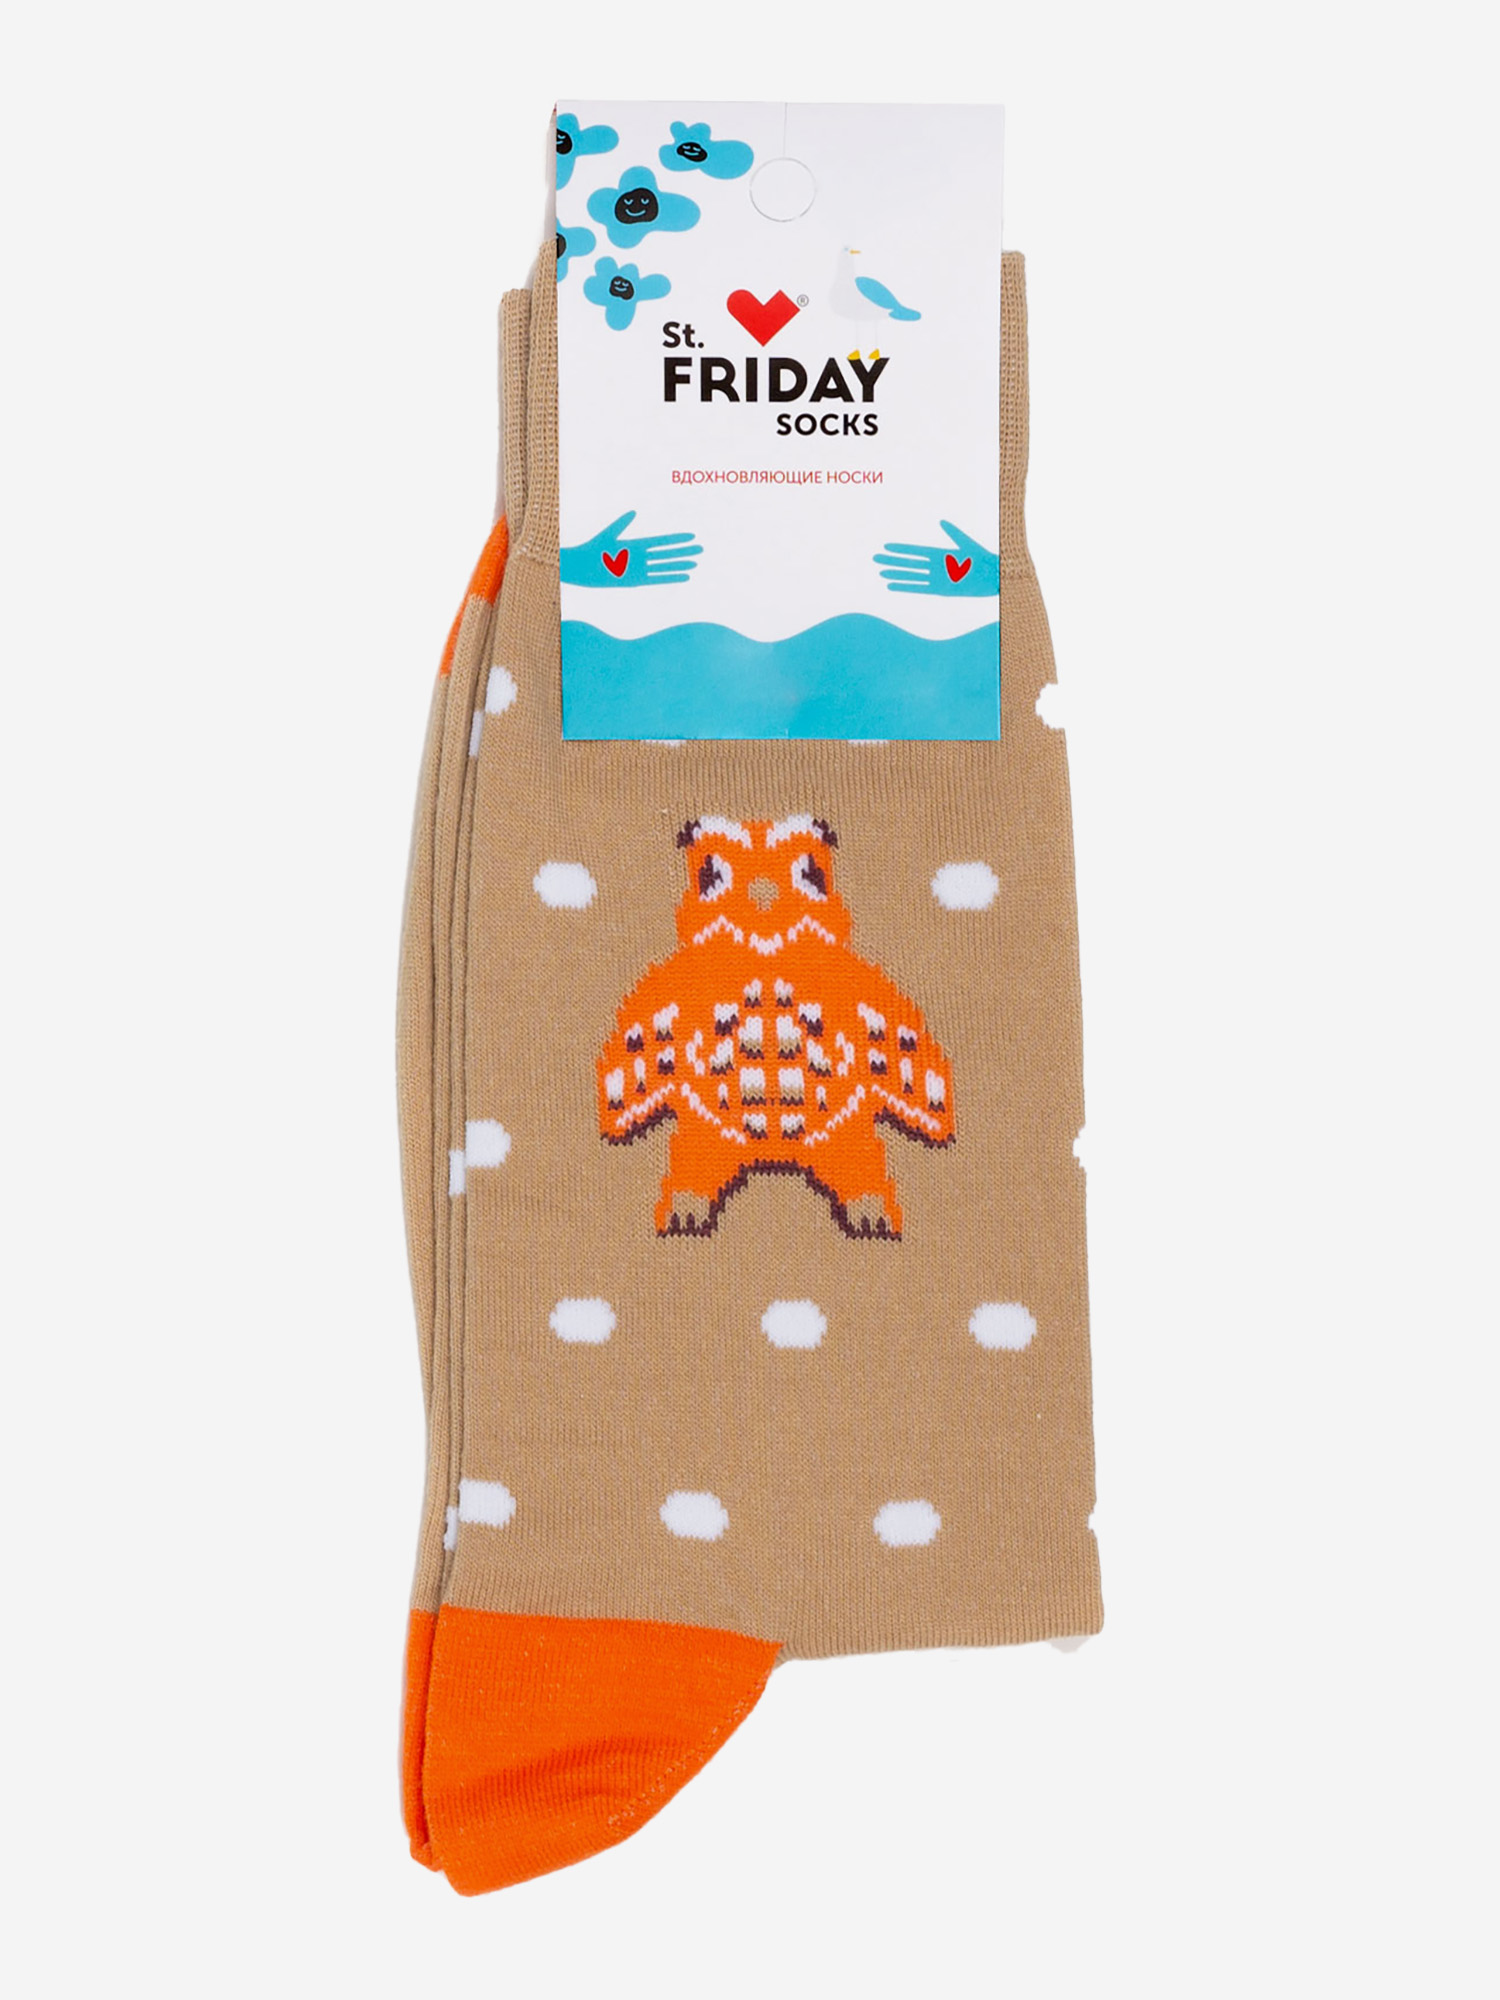 Носки с рисунками St.Friday Socks - Новоторжская игрушка, Коричневый